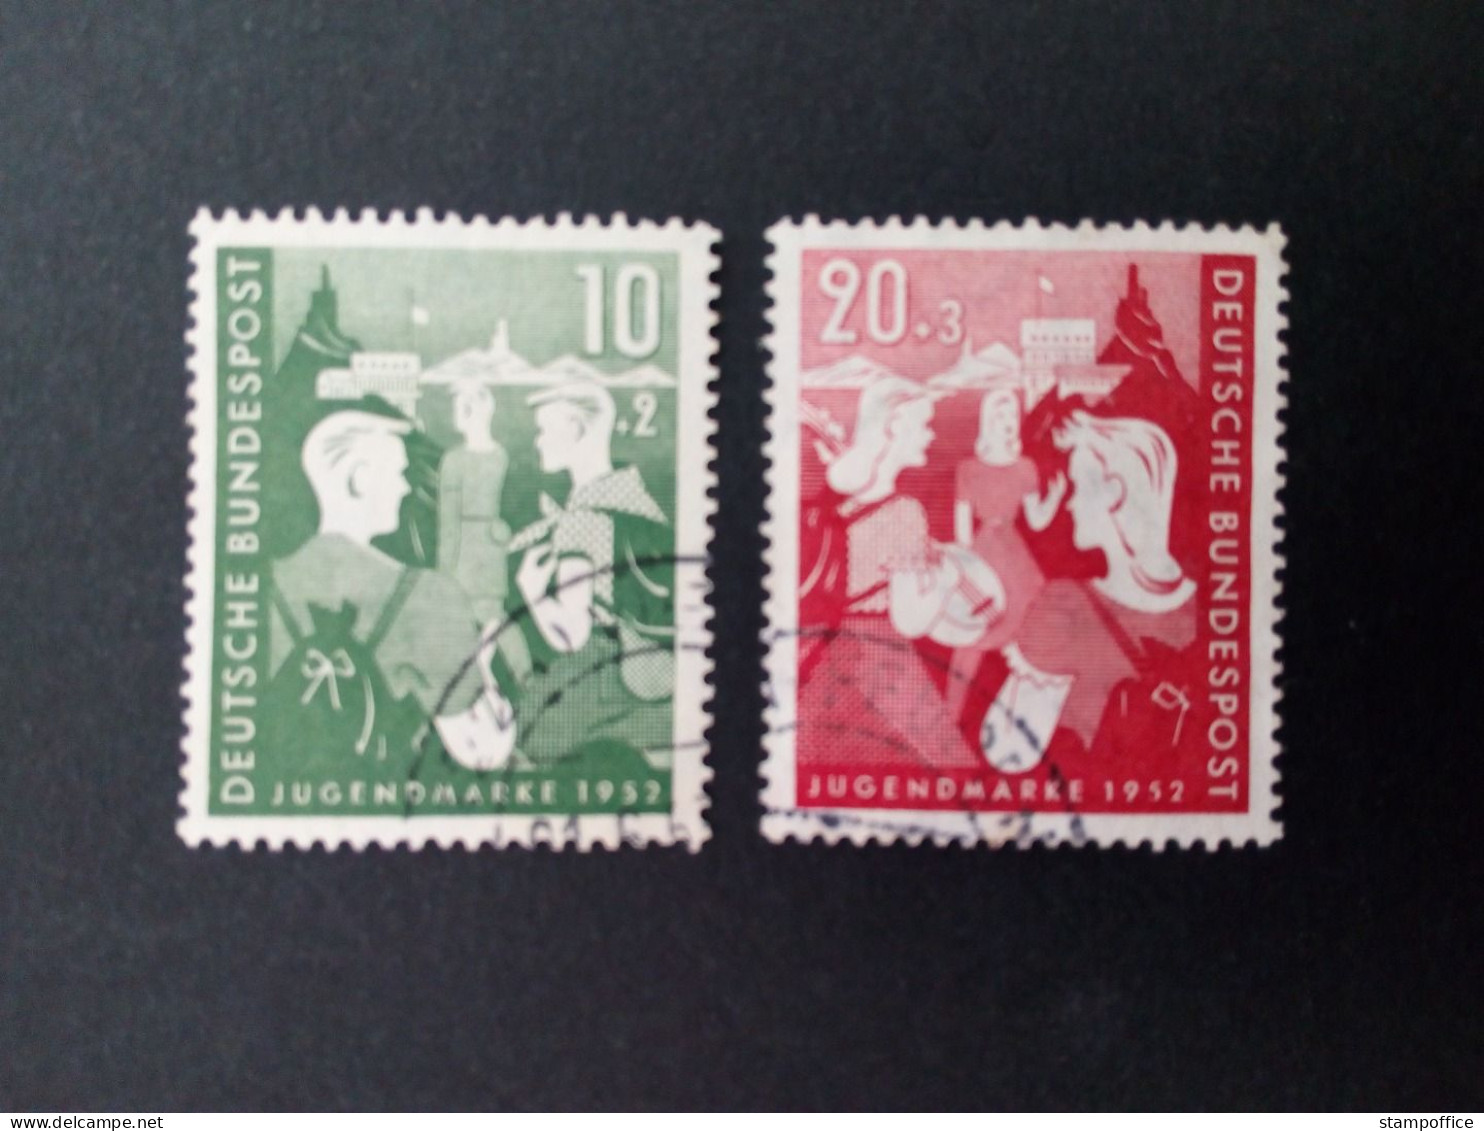 DEUTSCHLAND MI-NR. 153-154 GESTEMPELT(USED) JUGEND 1952 ZWEITER BUNDESJUGENDPLAN - Used Stamps